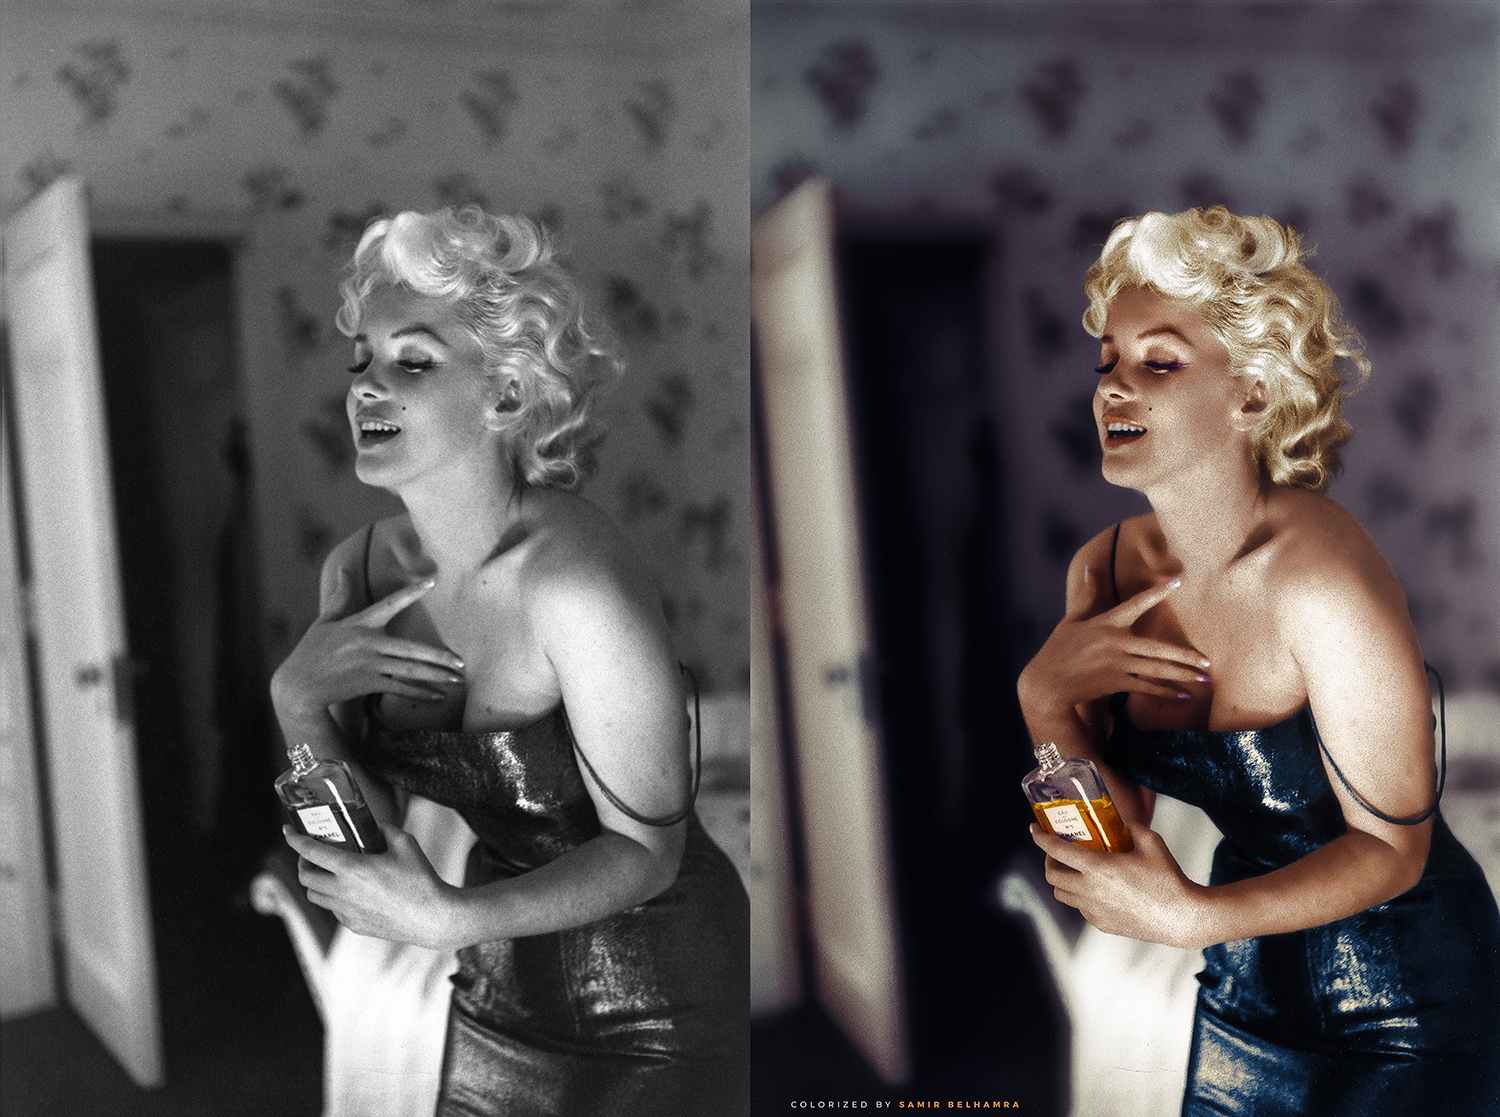 Cái tên Marilyn Monroe - với vẻ đẹp khêu gợi tựa như đại sứ thương hiệu đầu tiên cho hương nước hoa Chanel No.5